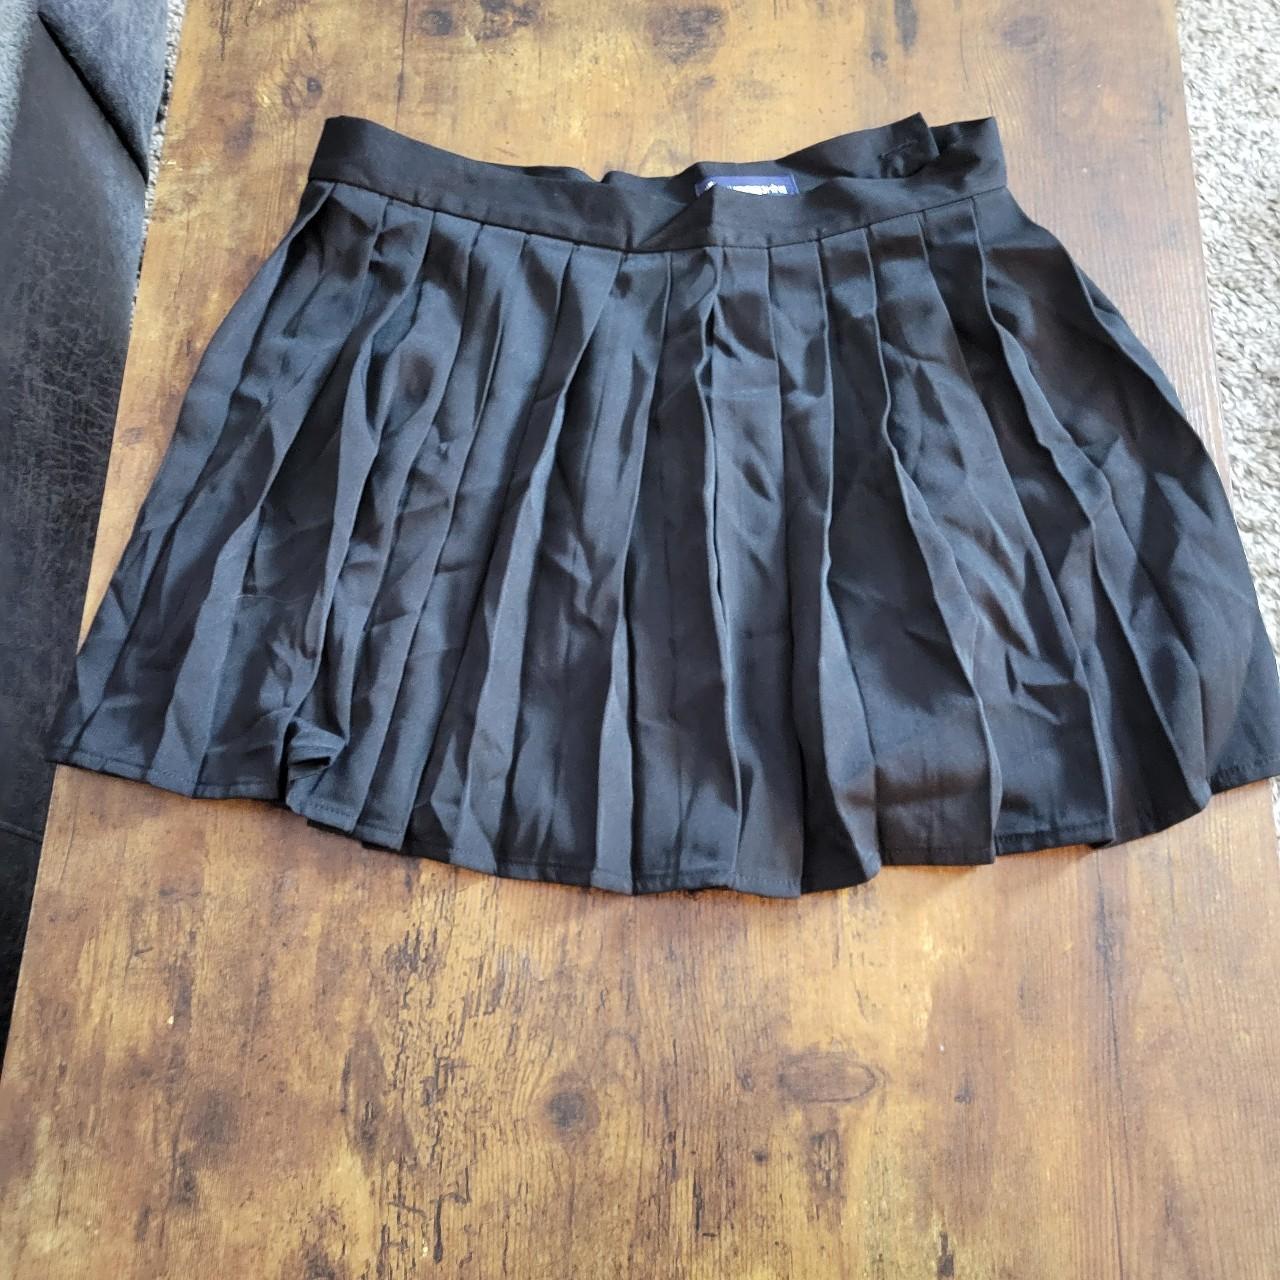 Black Pleated Skirt Girls Size Xxxl 32 Inch Waist Depop